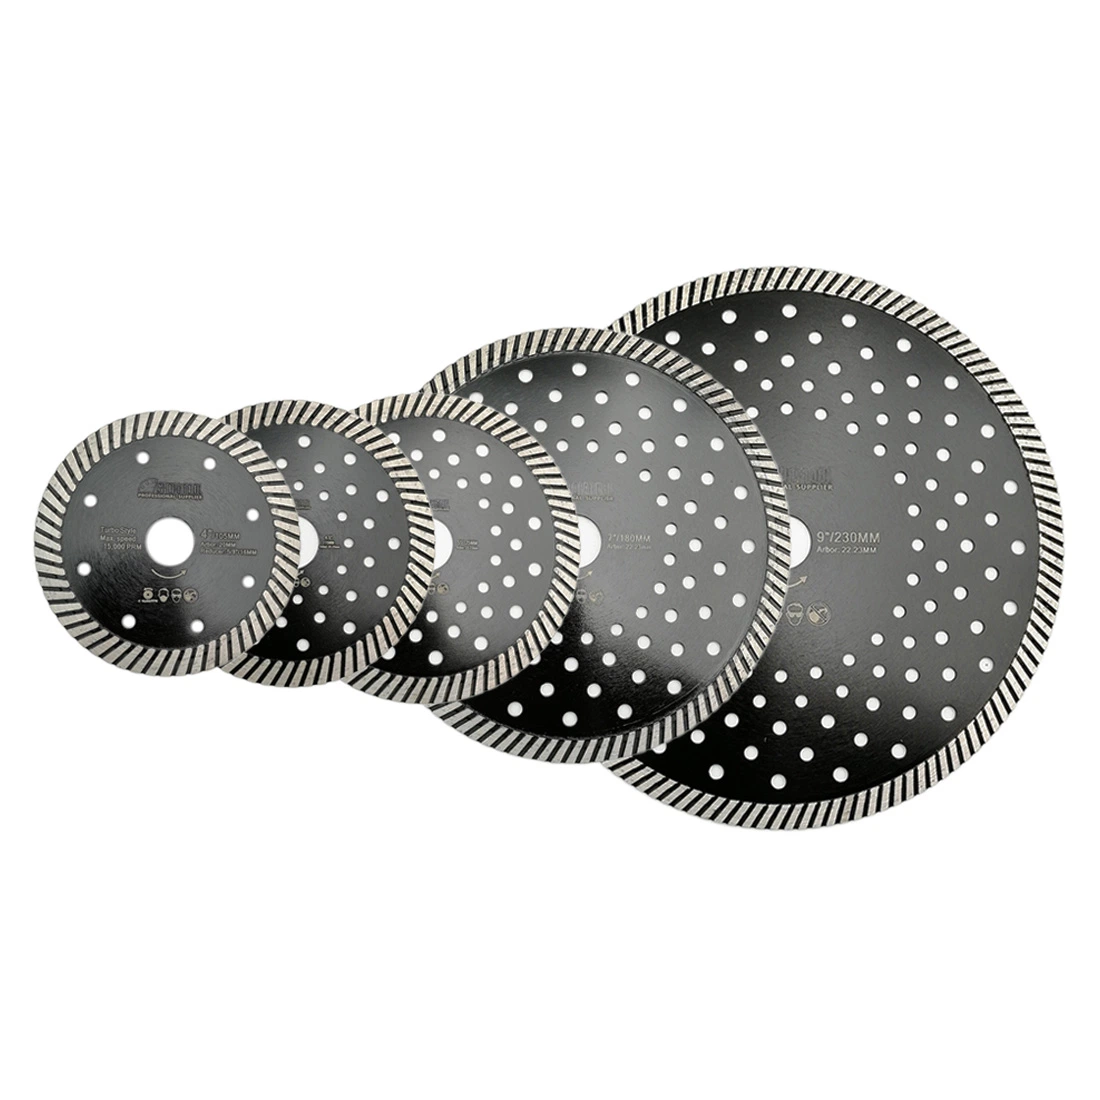 Herramientas eléctricas de hoja de sierra circular turbo de 9"-4" de diamante prensado en caliente Con múltiples agujeros